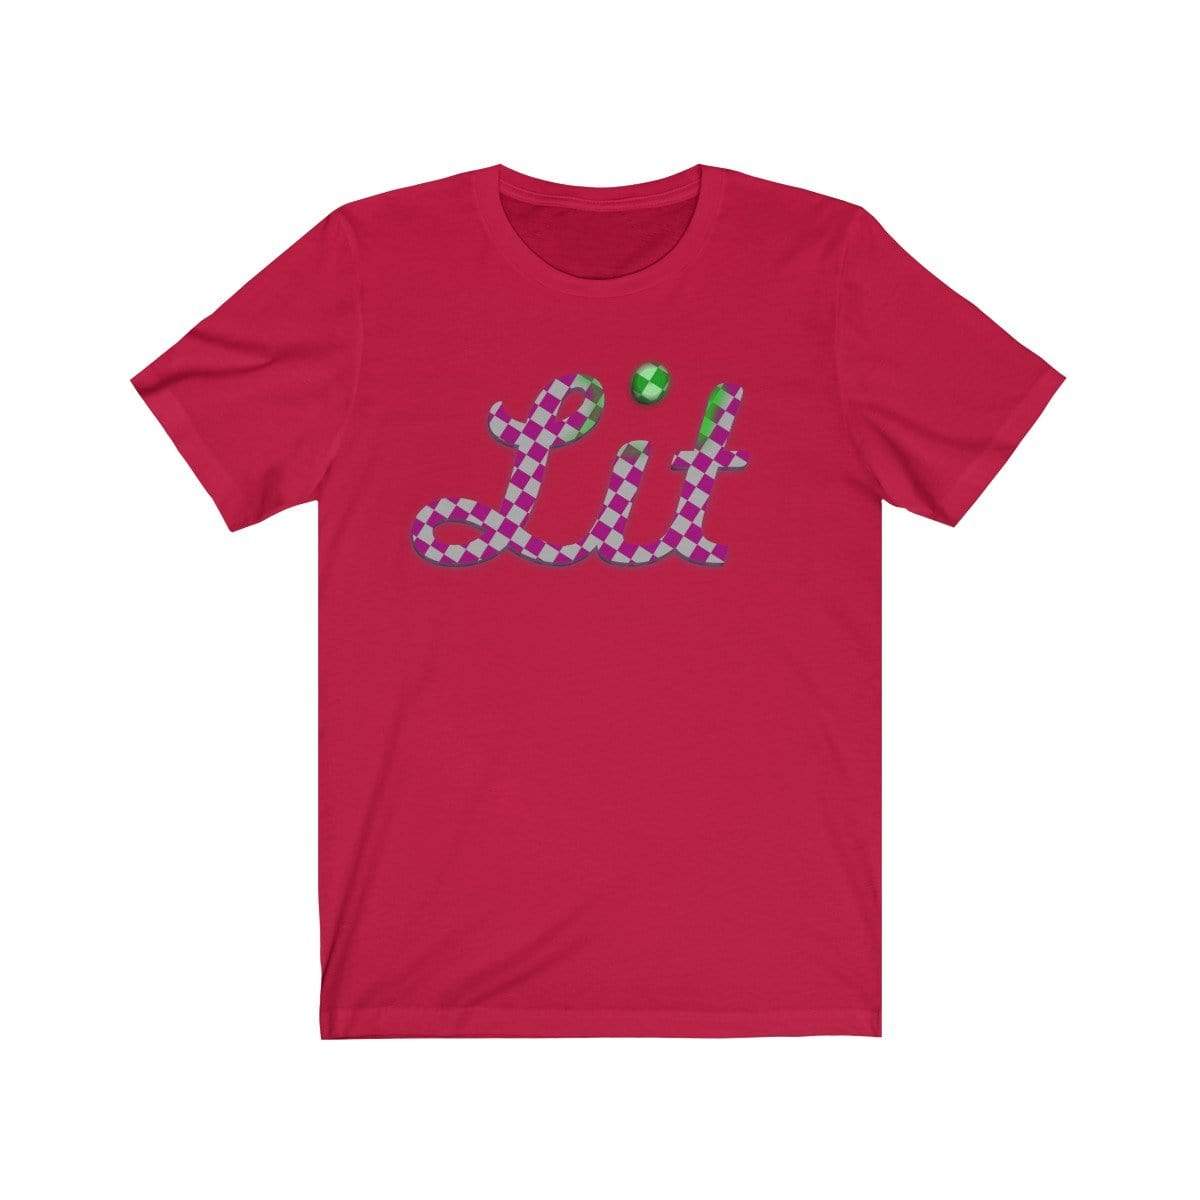 Printify T-Shirt Red / S Pink Checkered Lit T-shirt